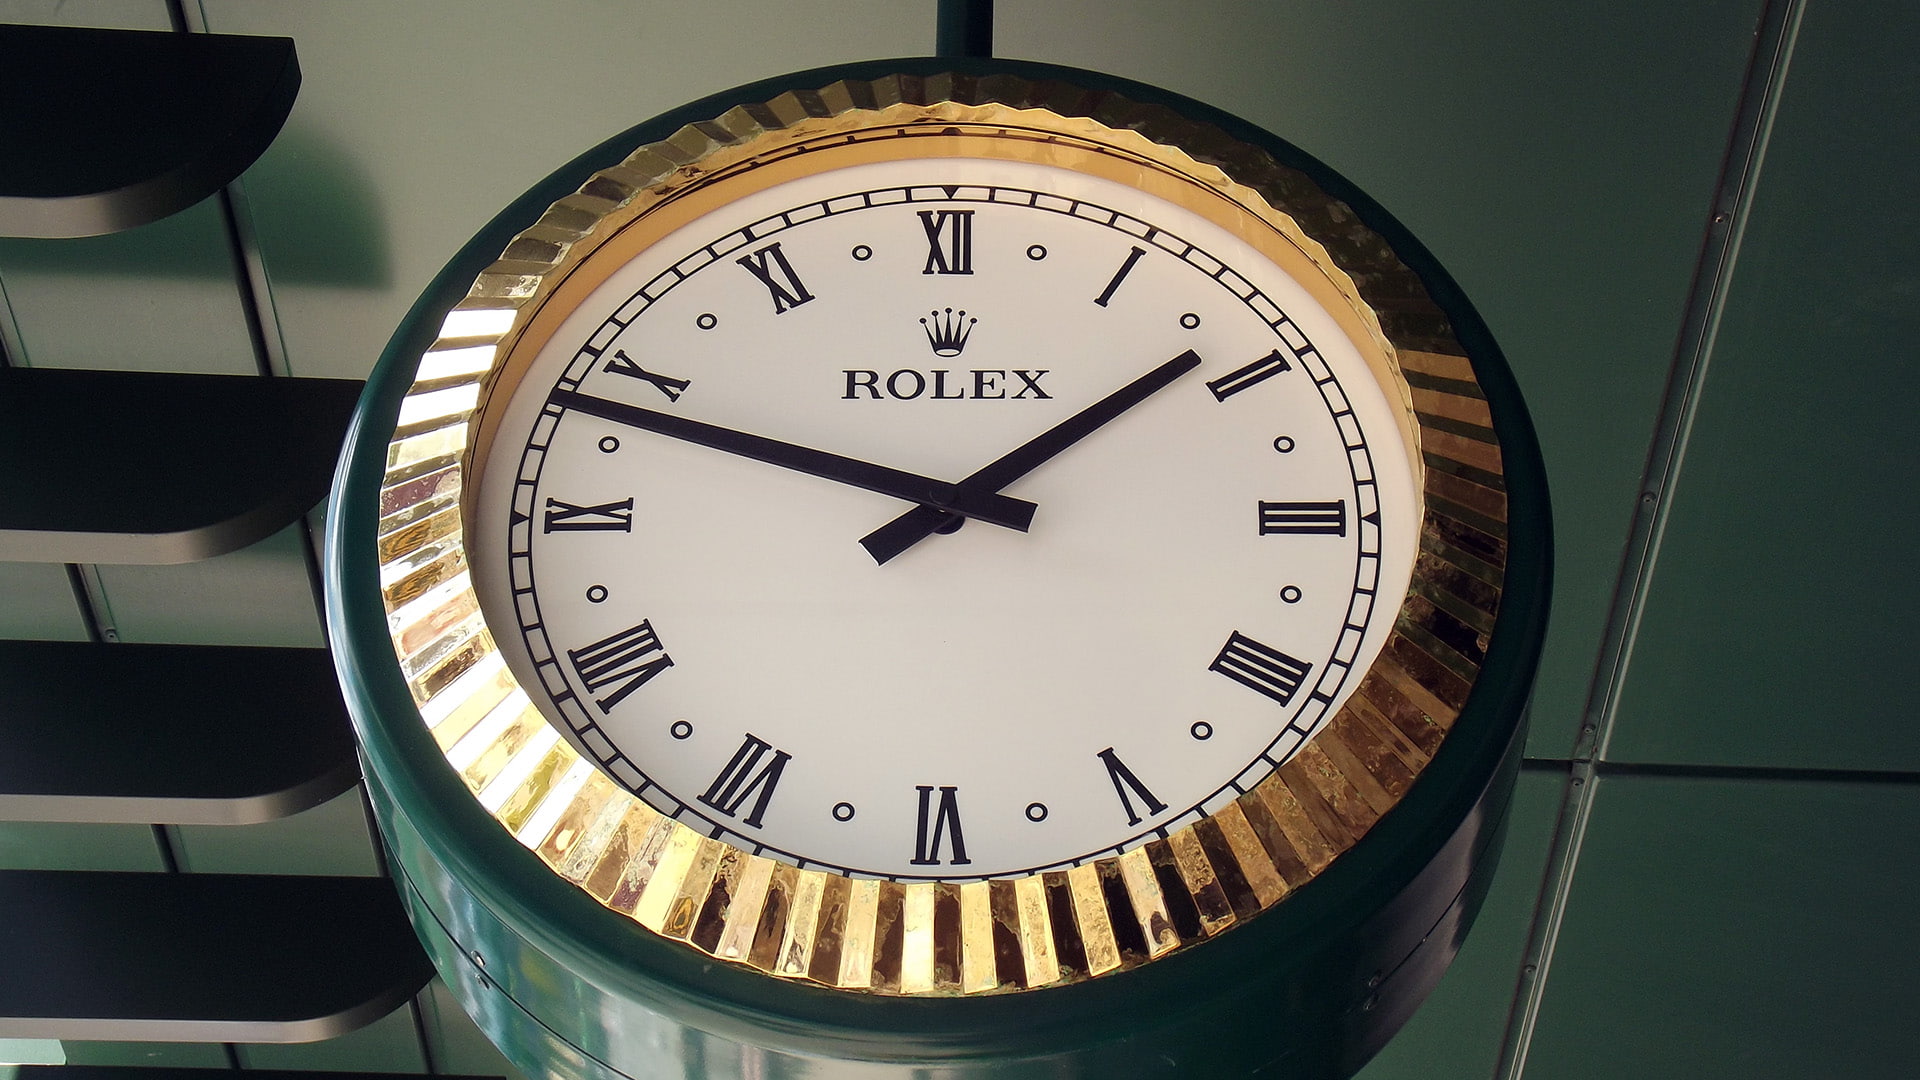 Rolex clock at Wimbledon